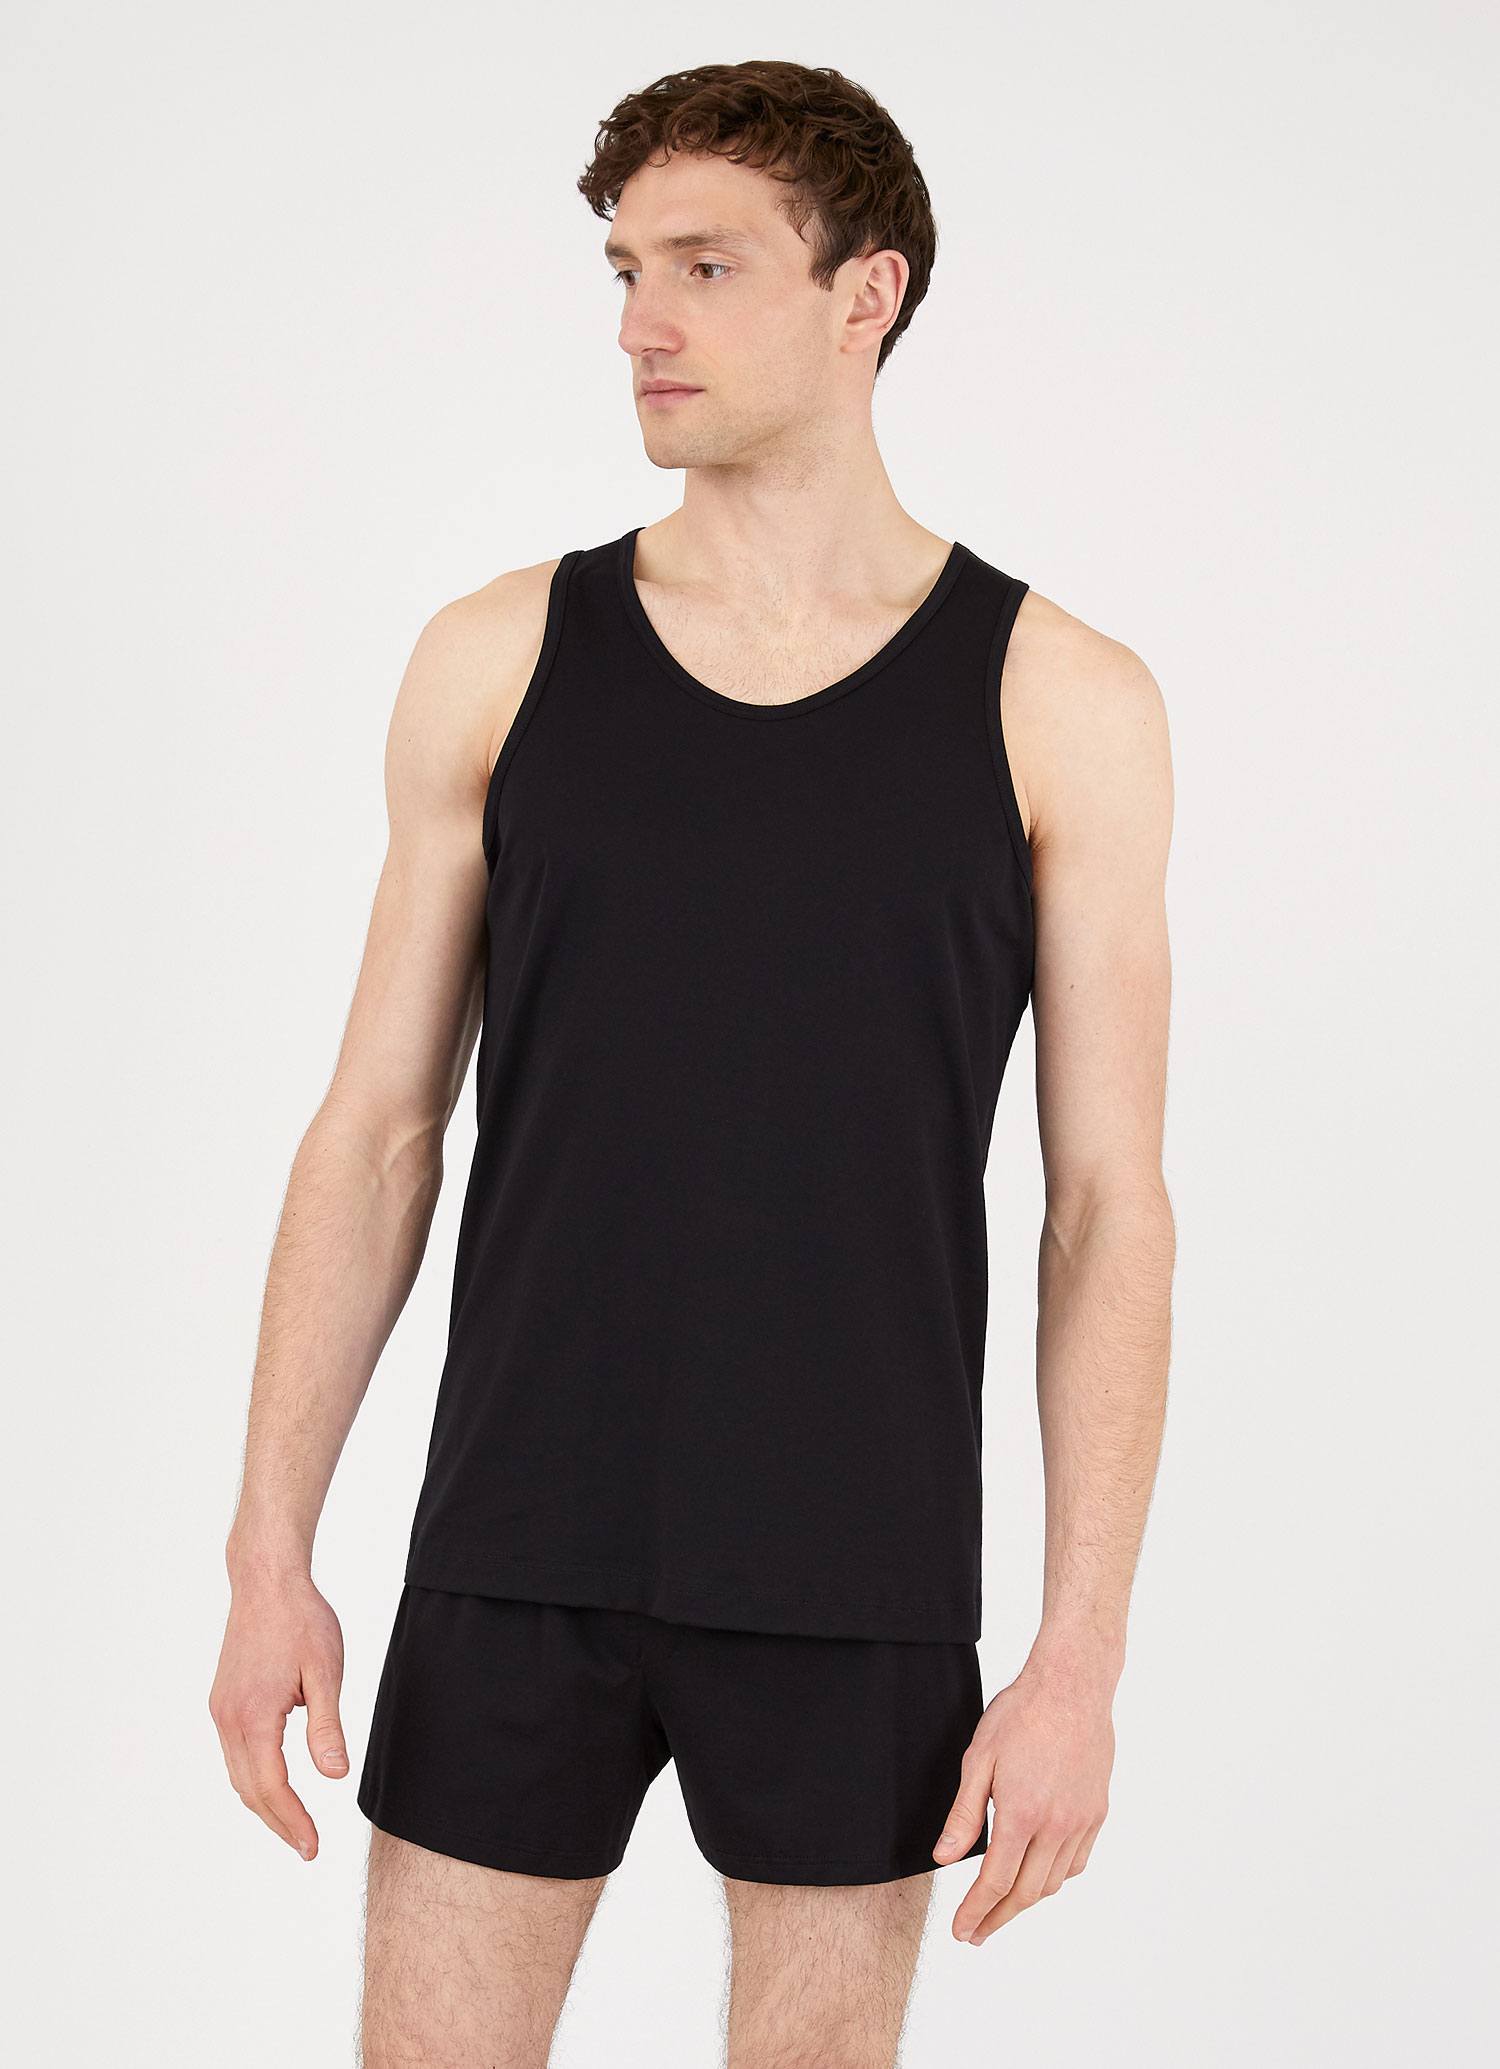 Men's Superfine Cotton Underwear Vest in Black